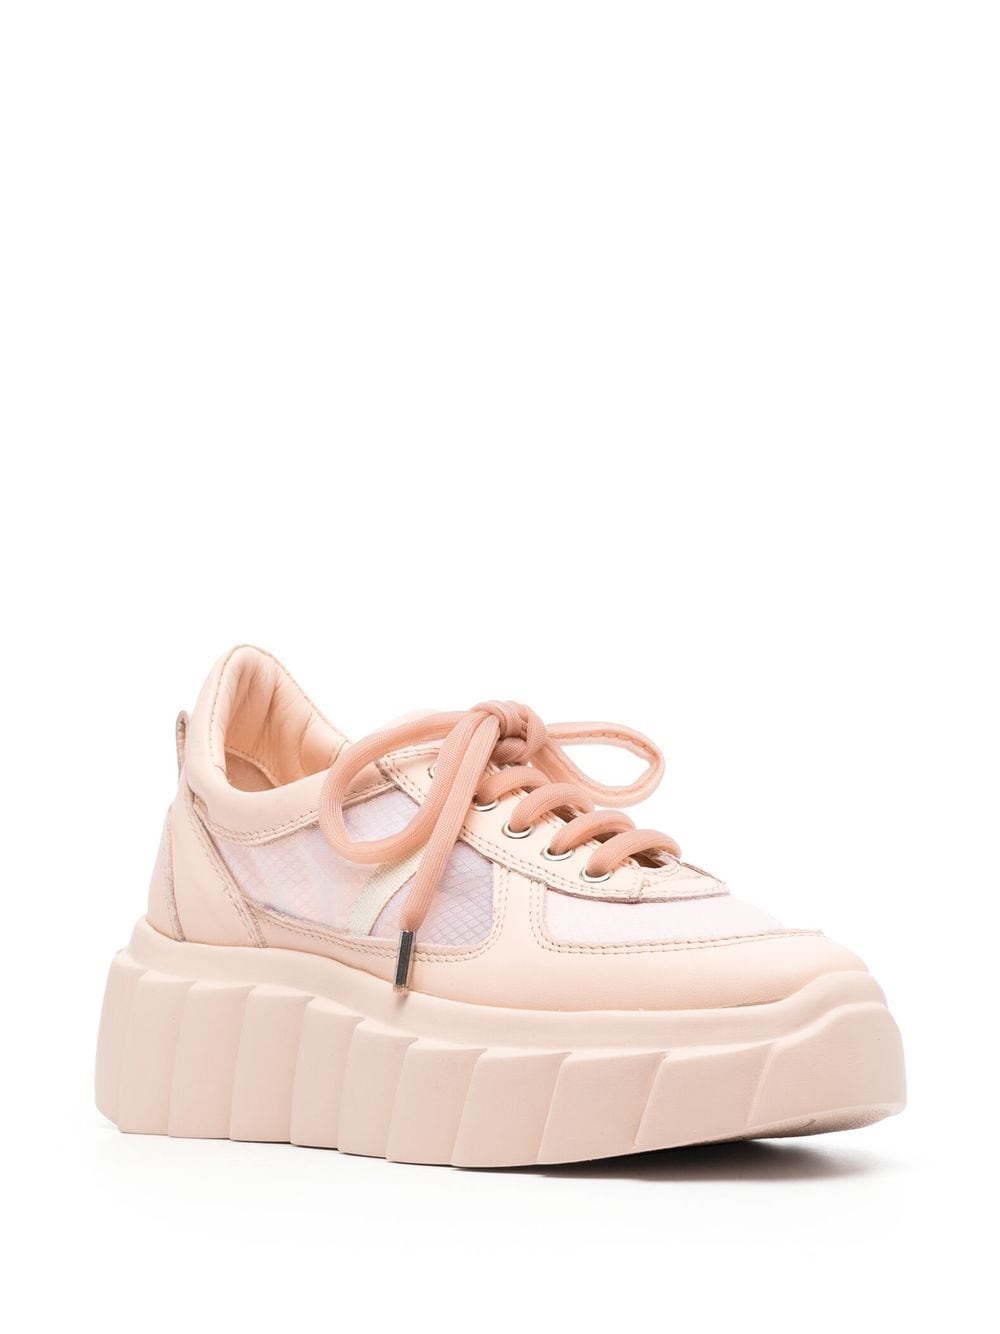 agl blondie grid platform sneakers - pink